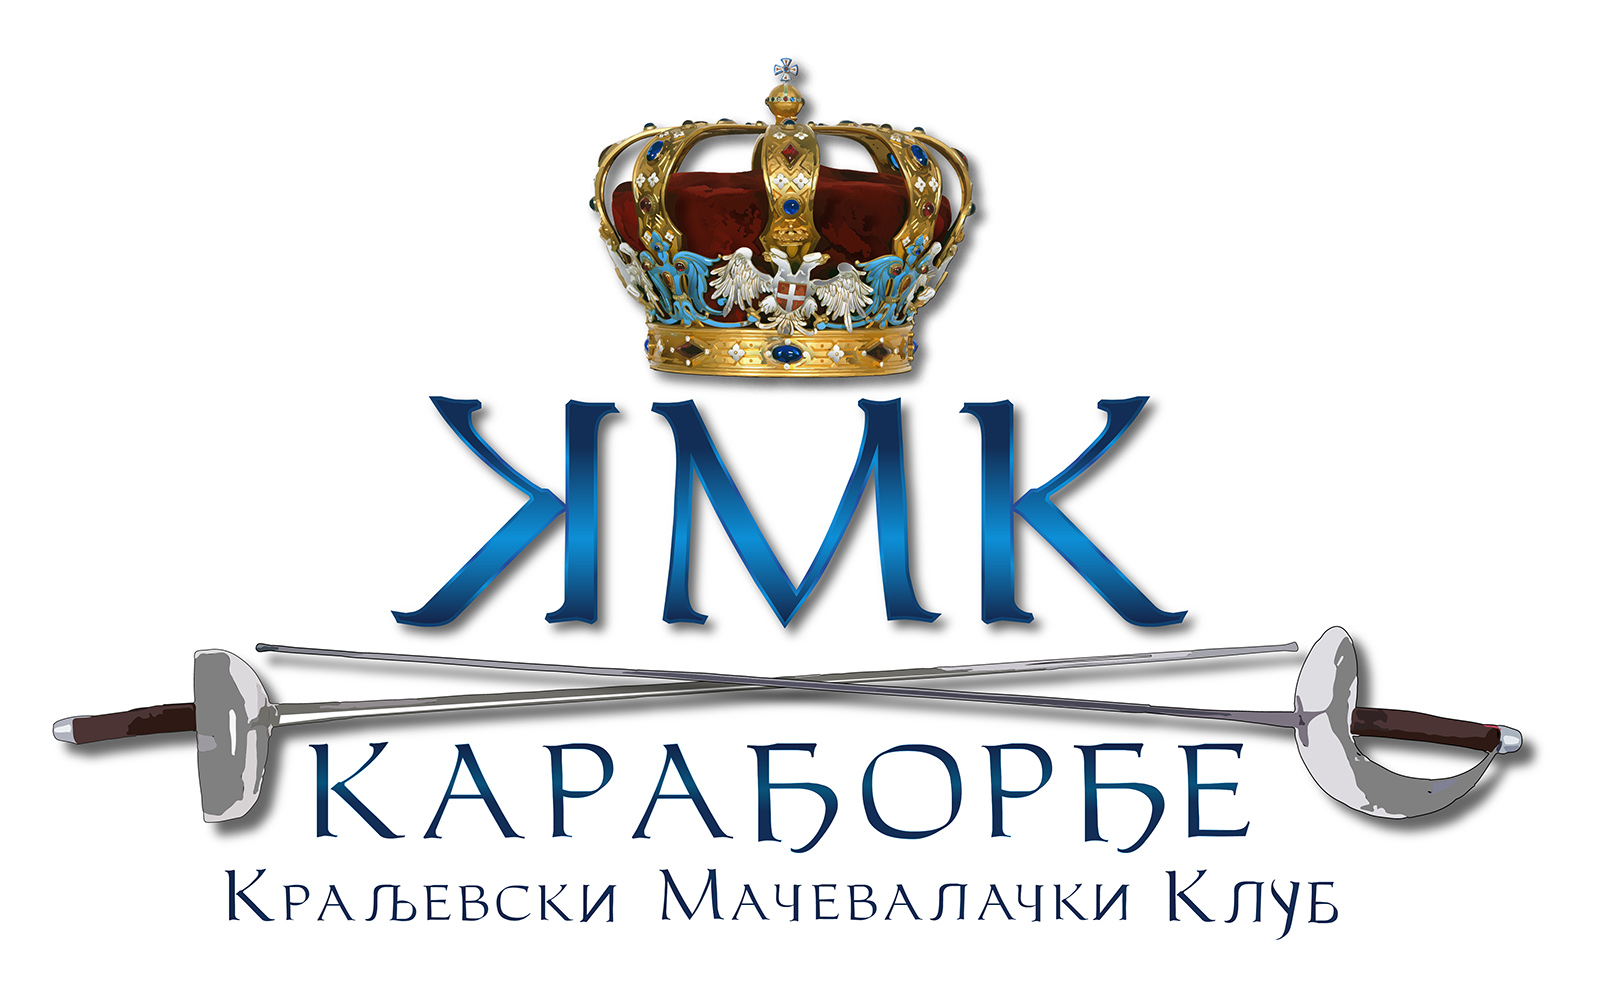 KMK Karadjordje - logo redizajn